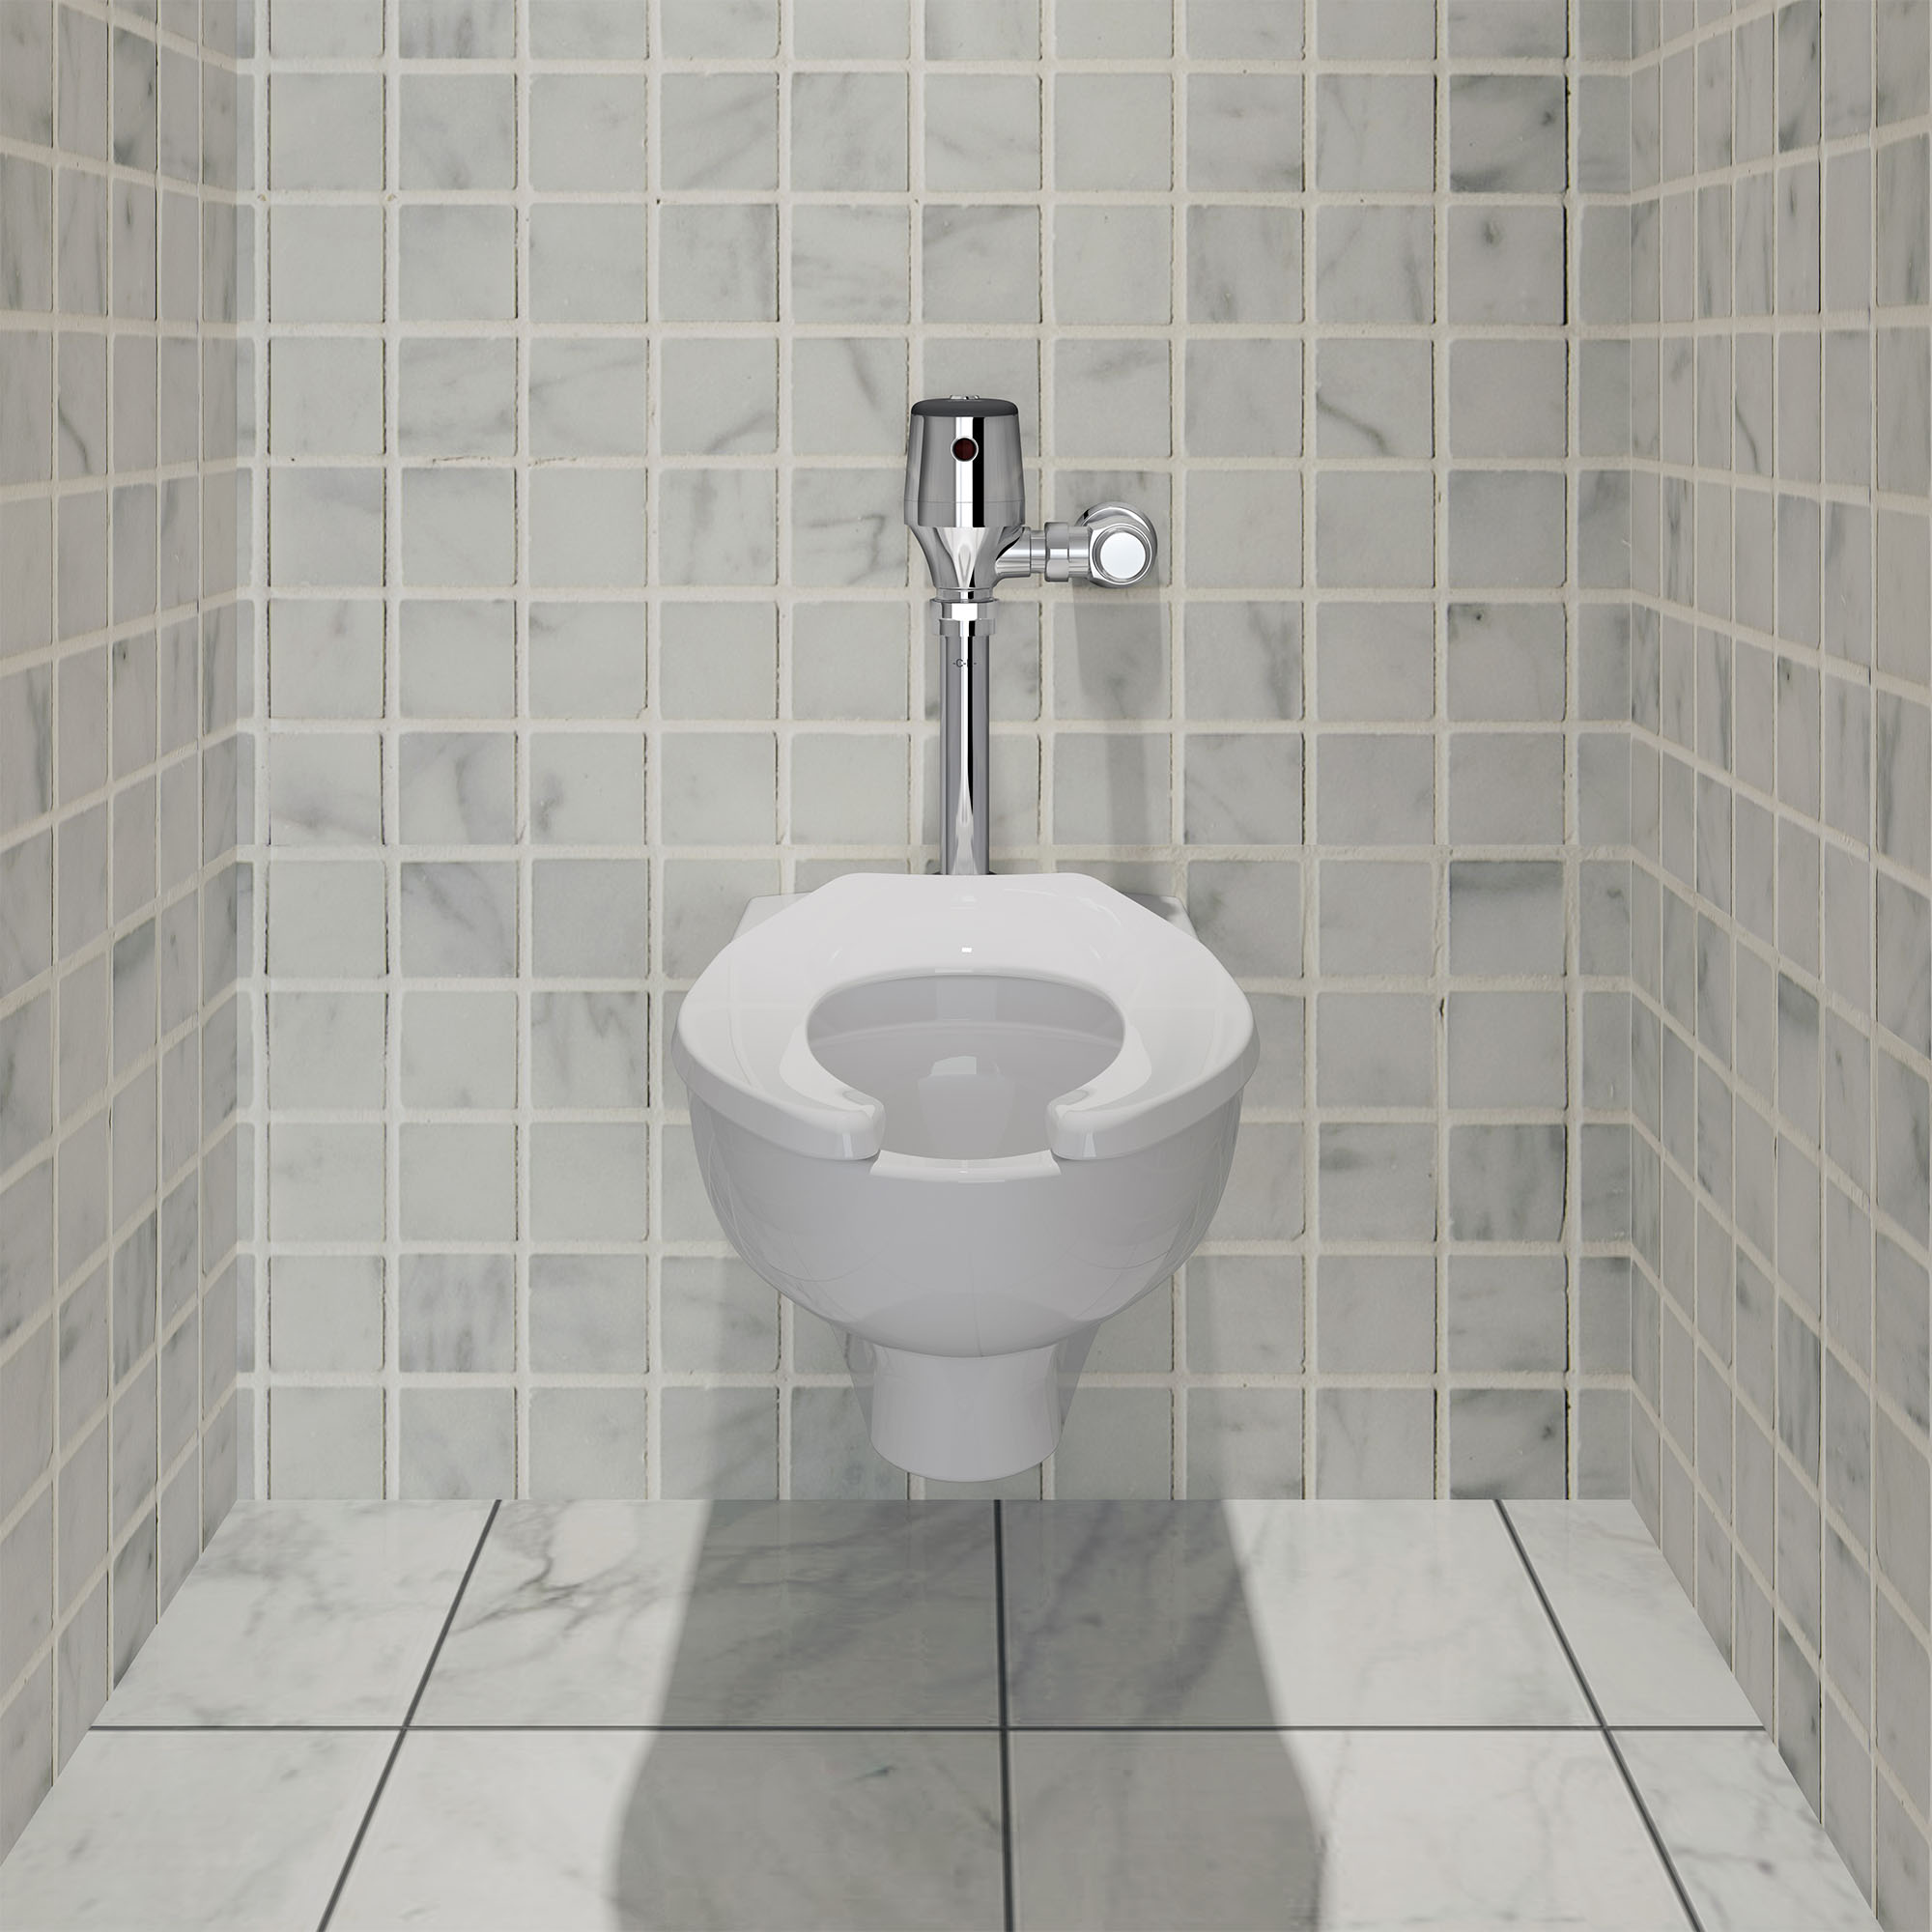 Robinet de chasse d'eau pour toilettes exposées UltimaMC SelectronicMC, à diaphragme, modèle de base,1,1 gpc (4,2 Lpc)